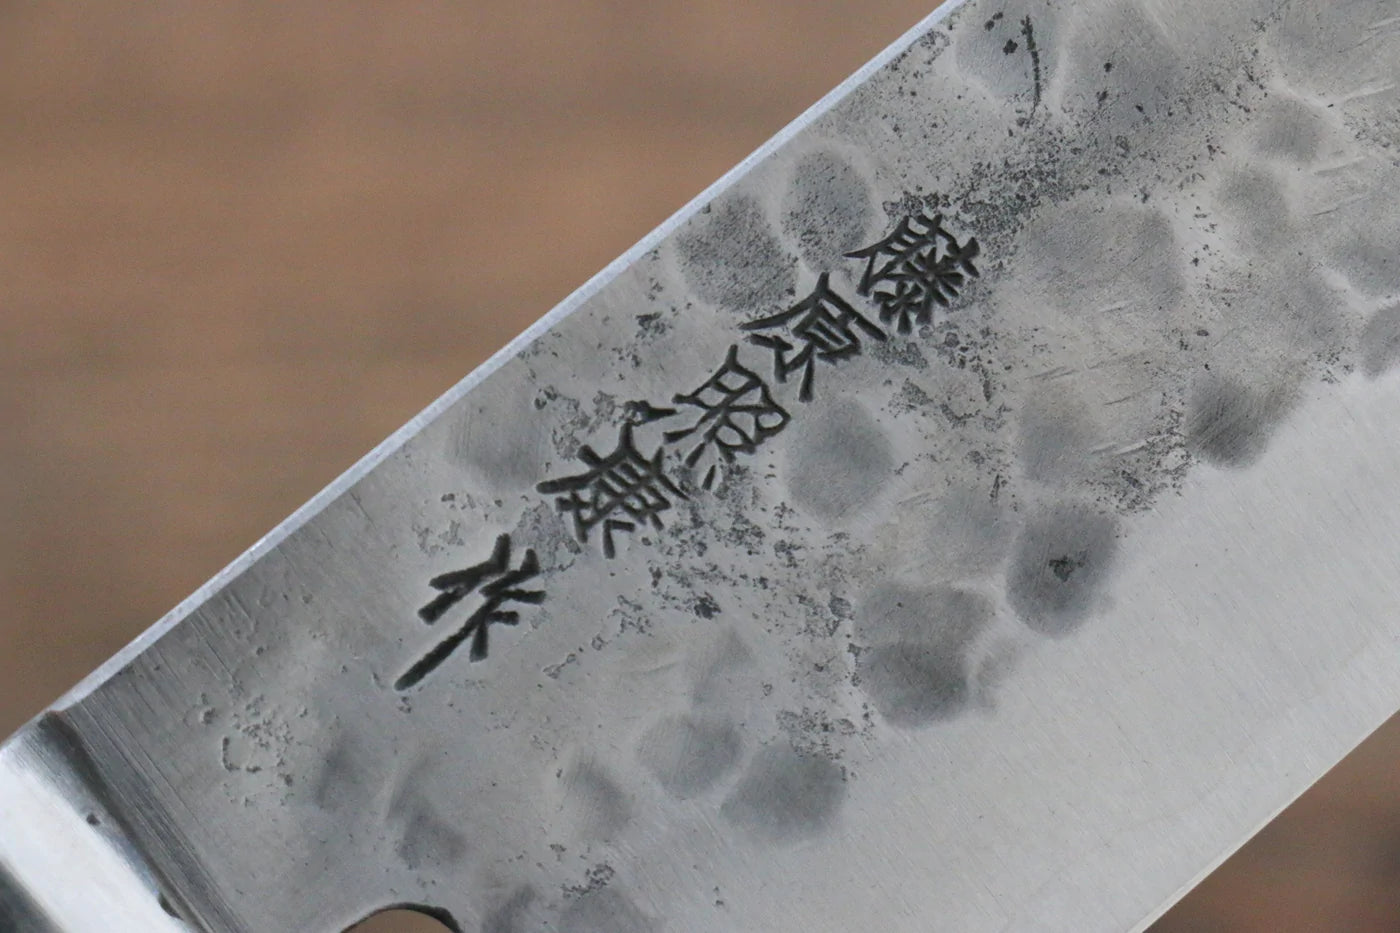 Marke Fujiwara Teruyasu Berühmtes Schwert der Illusion Nr. 1 weißer Stahl Traditionelles handgeschmiedetes japanisches Messer Nashiji-Mehrzweckmesser Japanisches Santoku-Messer 180 mm schwarzer Pakka-Holzgriff 